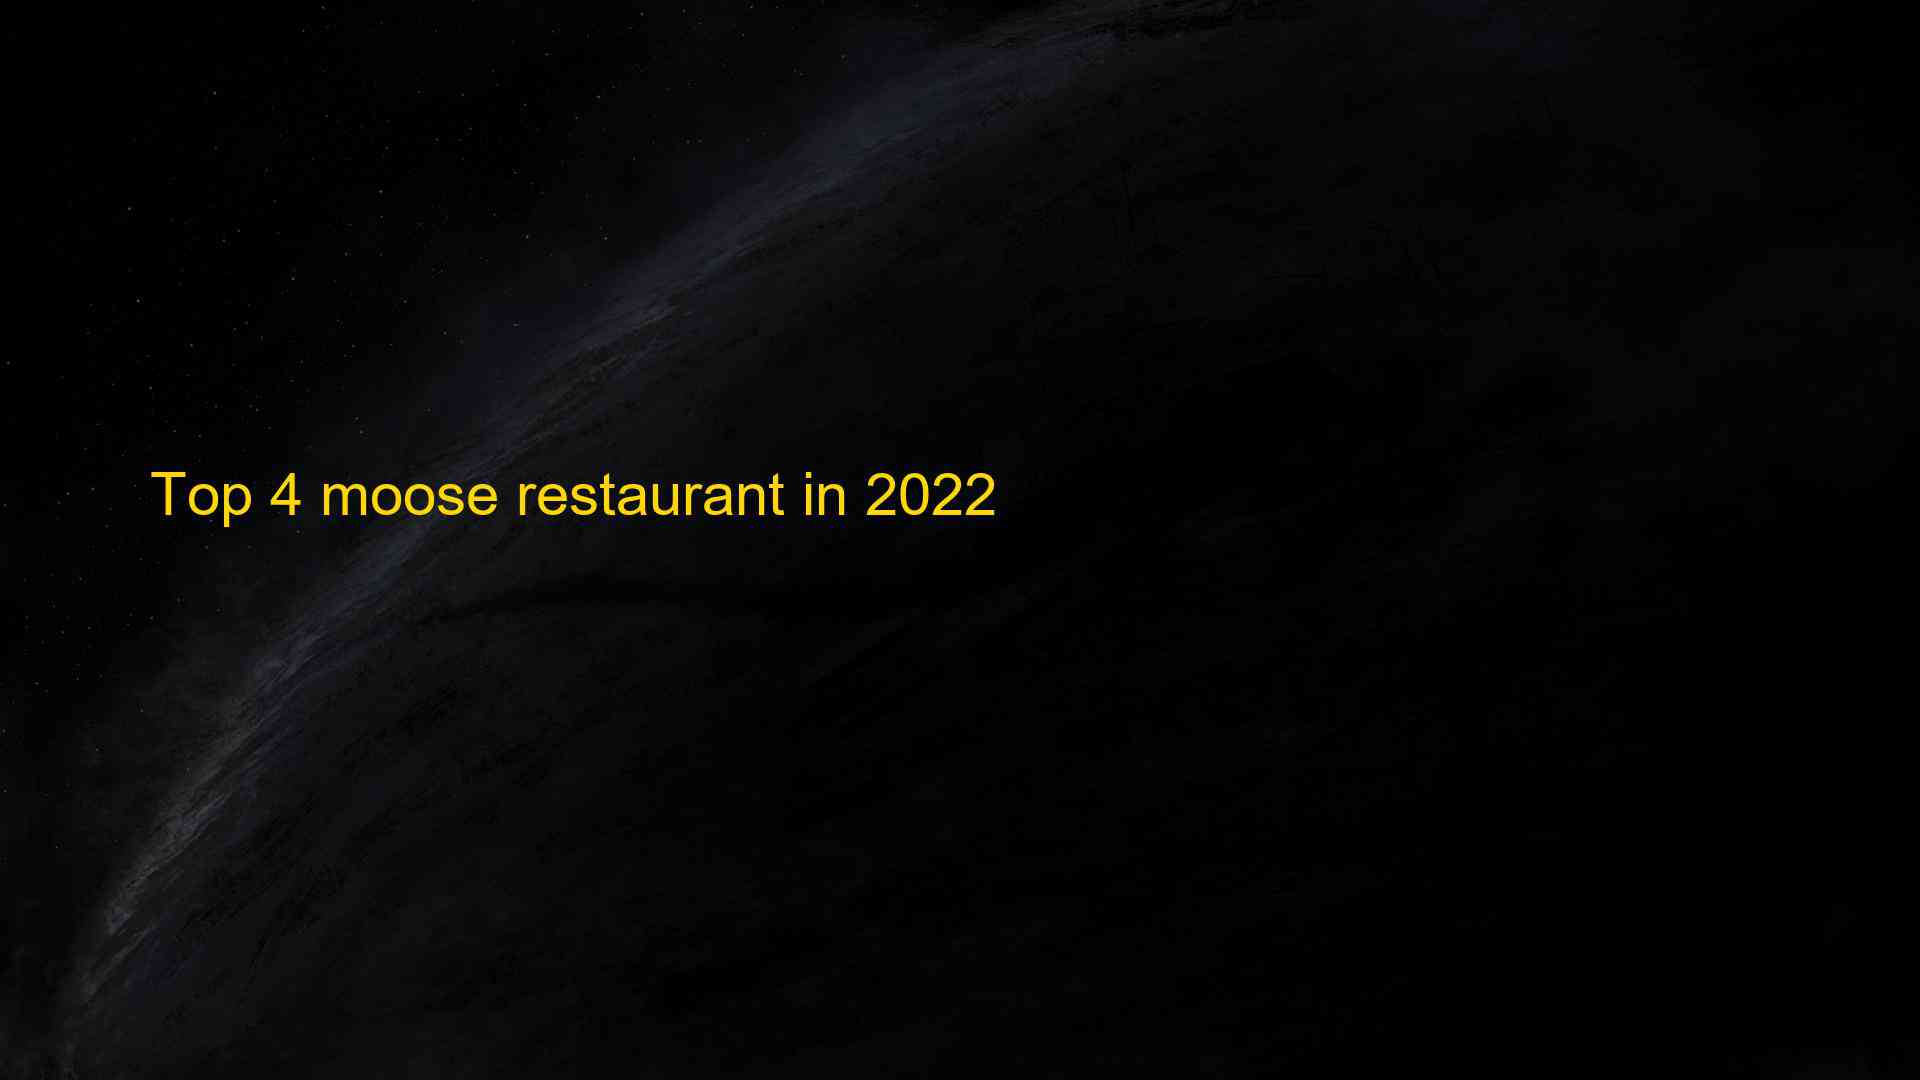 Top 4 moose restaurant in 2022 1662966463